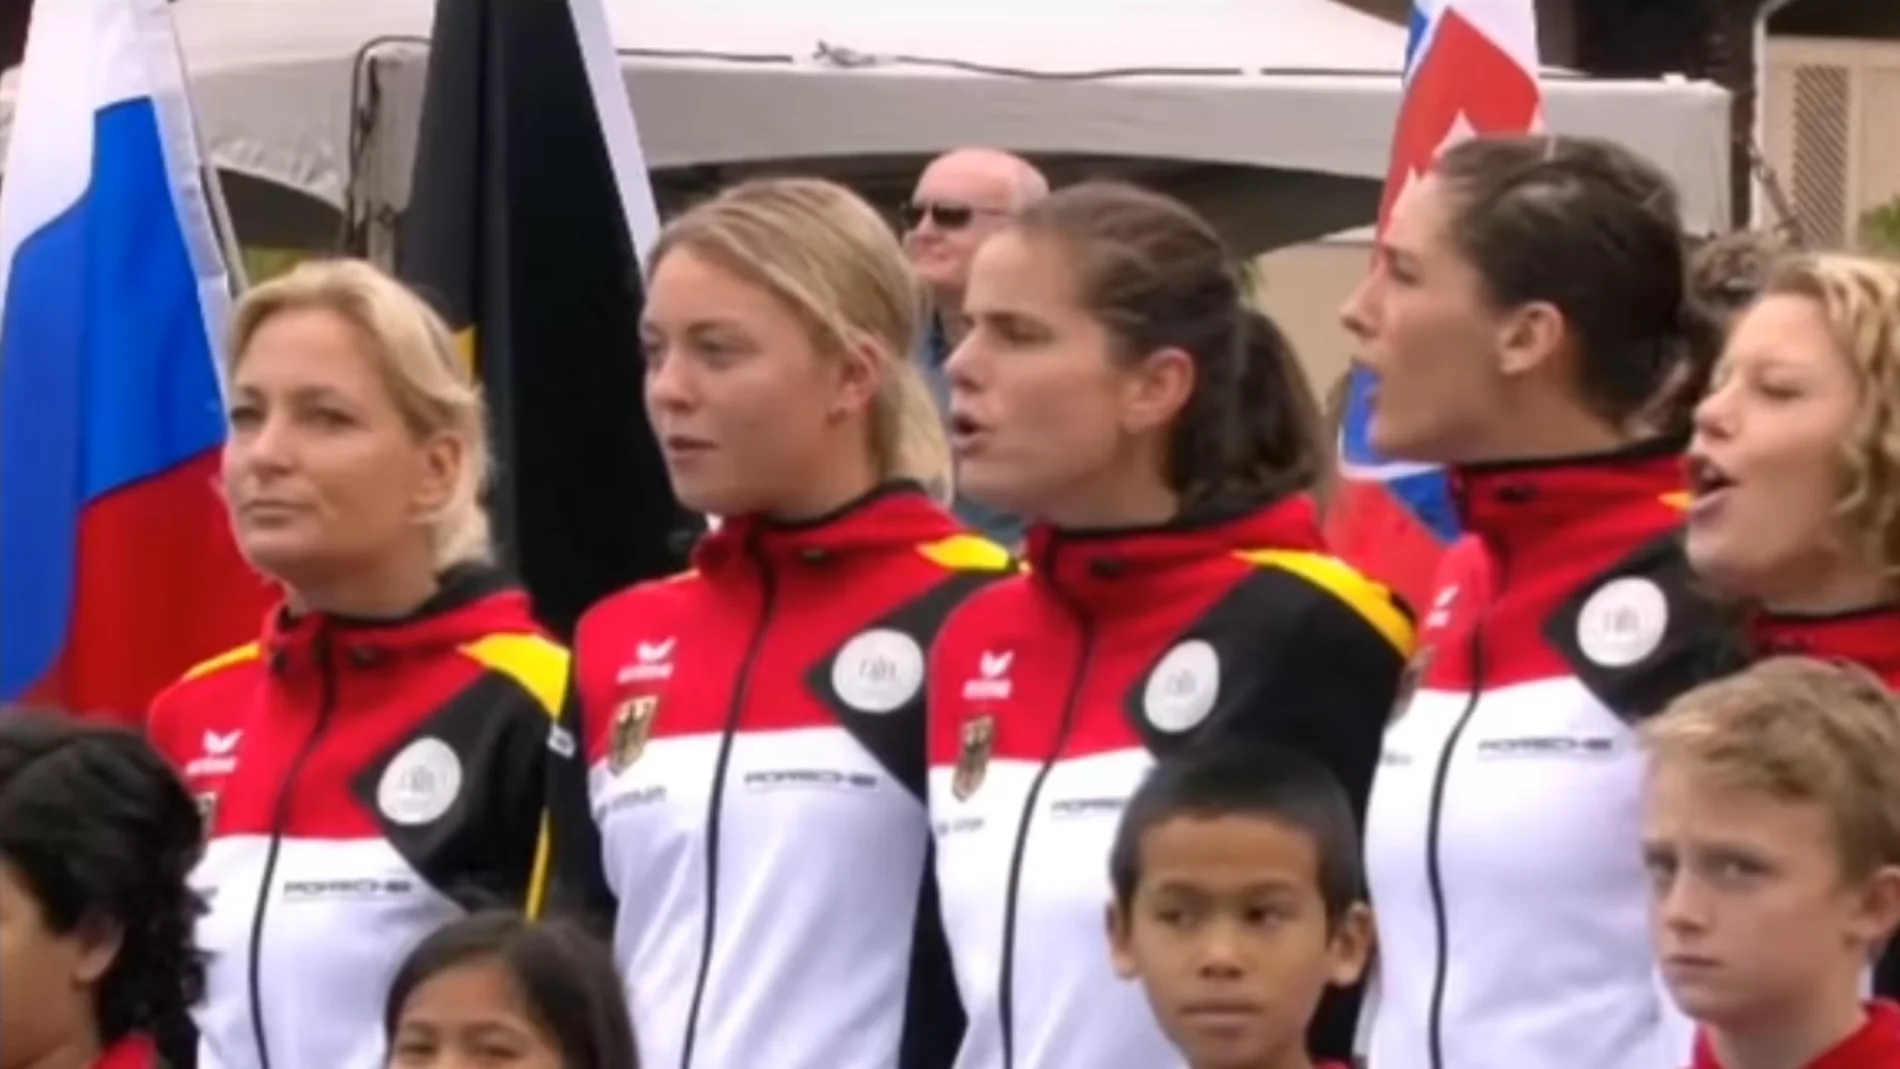 El equipo alemán de la Copa Federación, escuchando el himno nazi